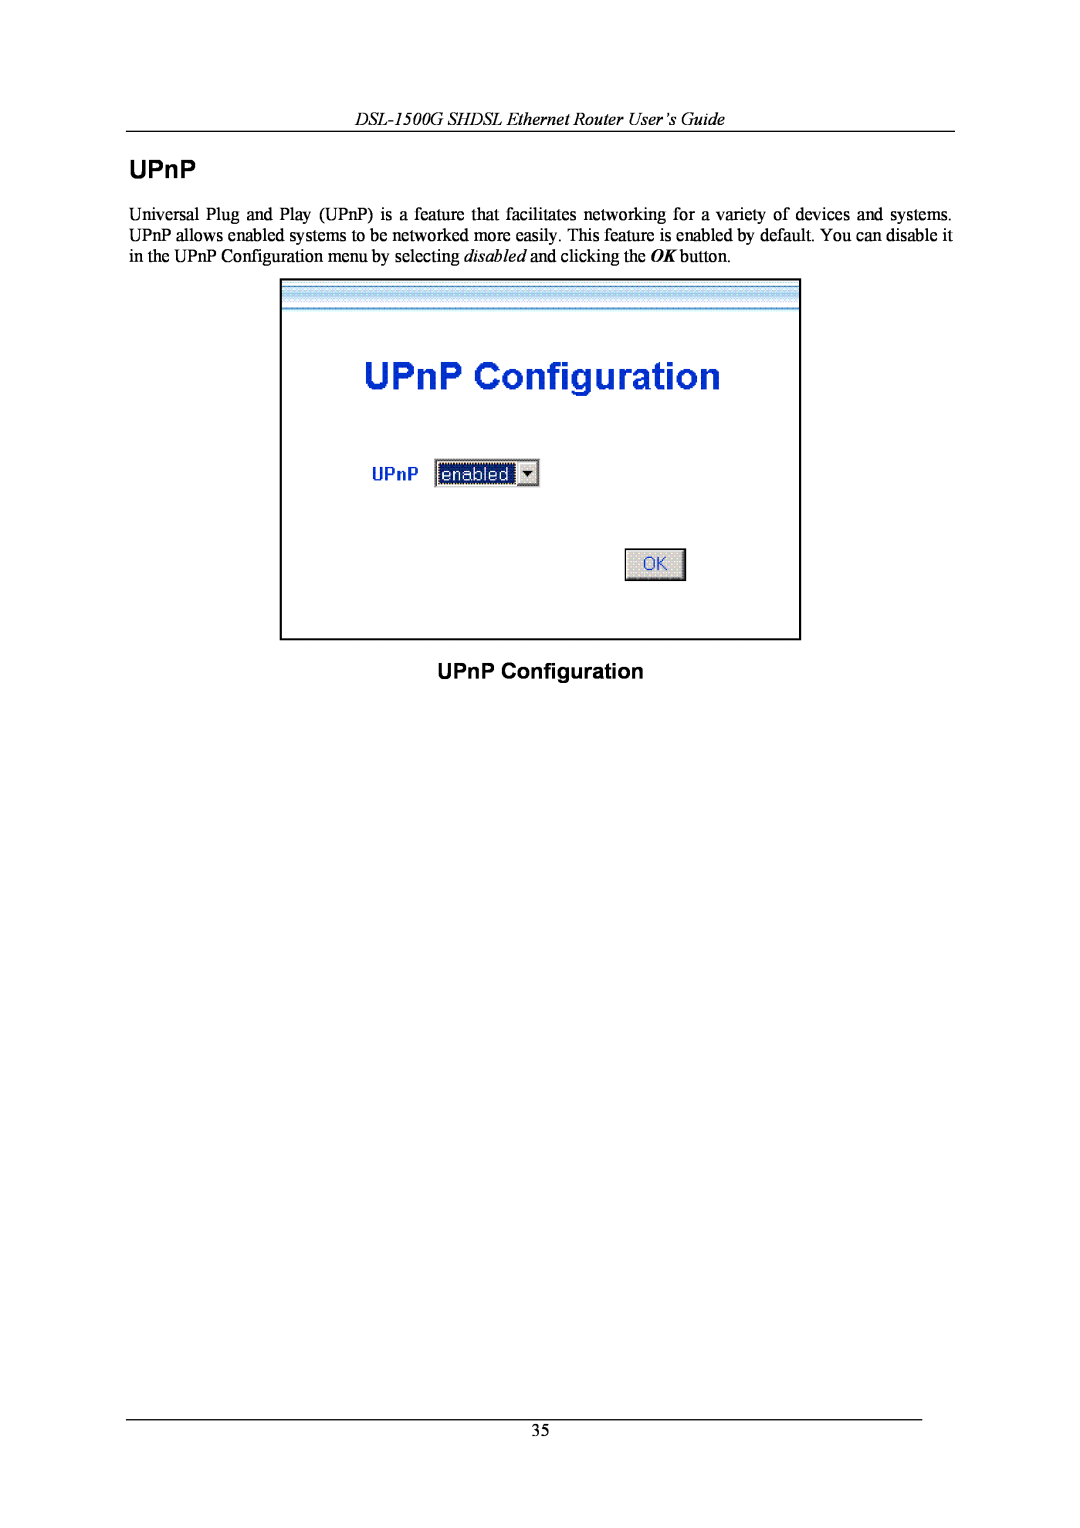 D-Link manual UPnP Configuration, DSL-1500G SHDSL Ethernet Router User’s Guide 